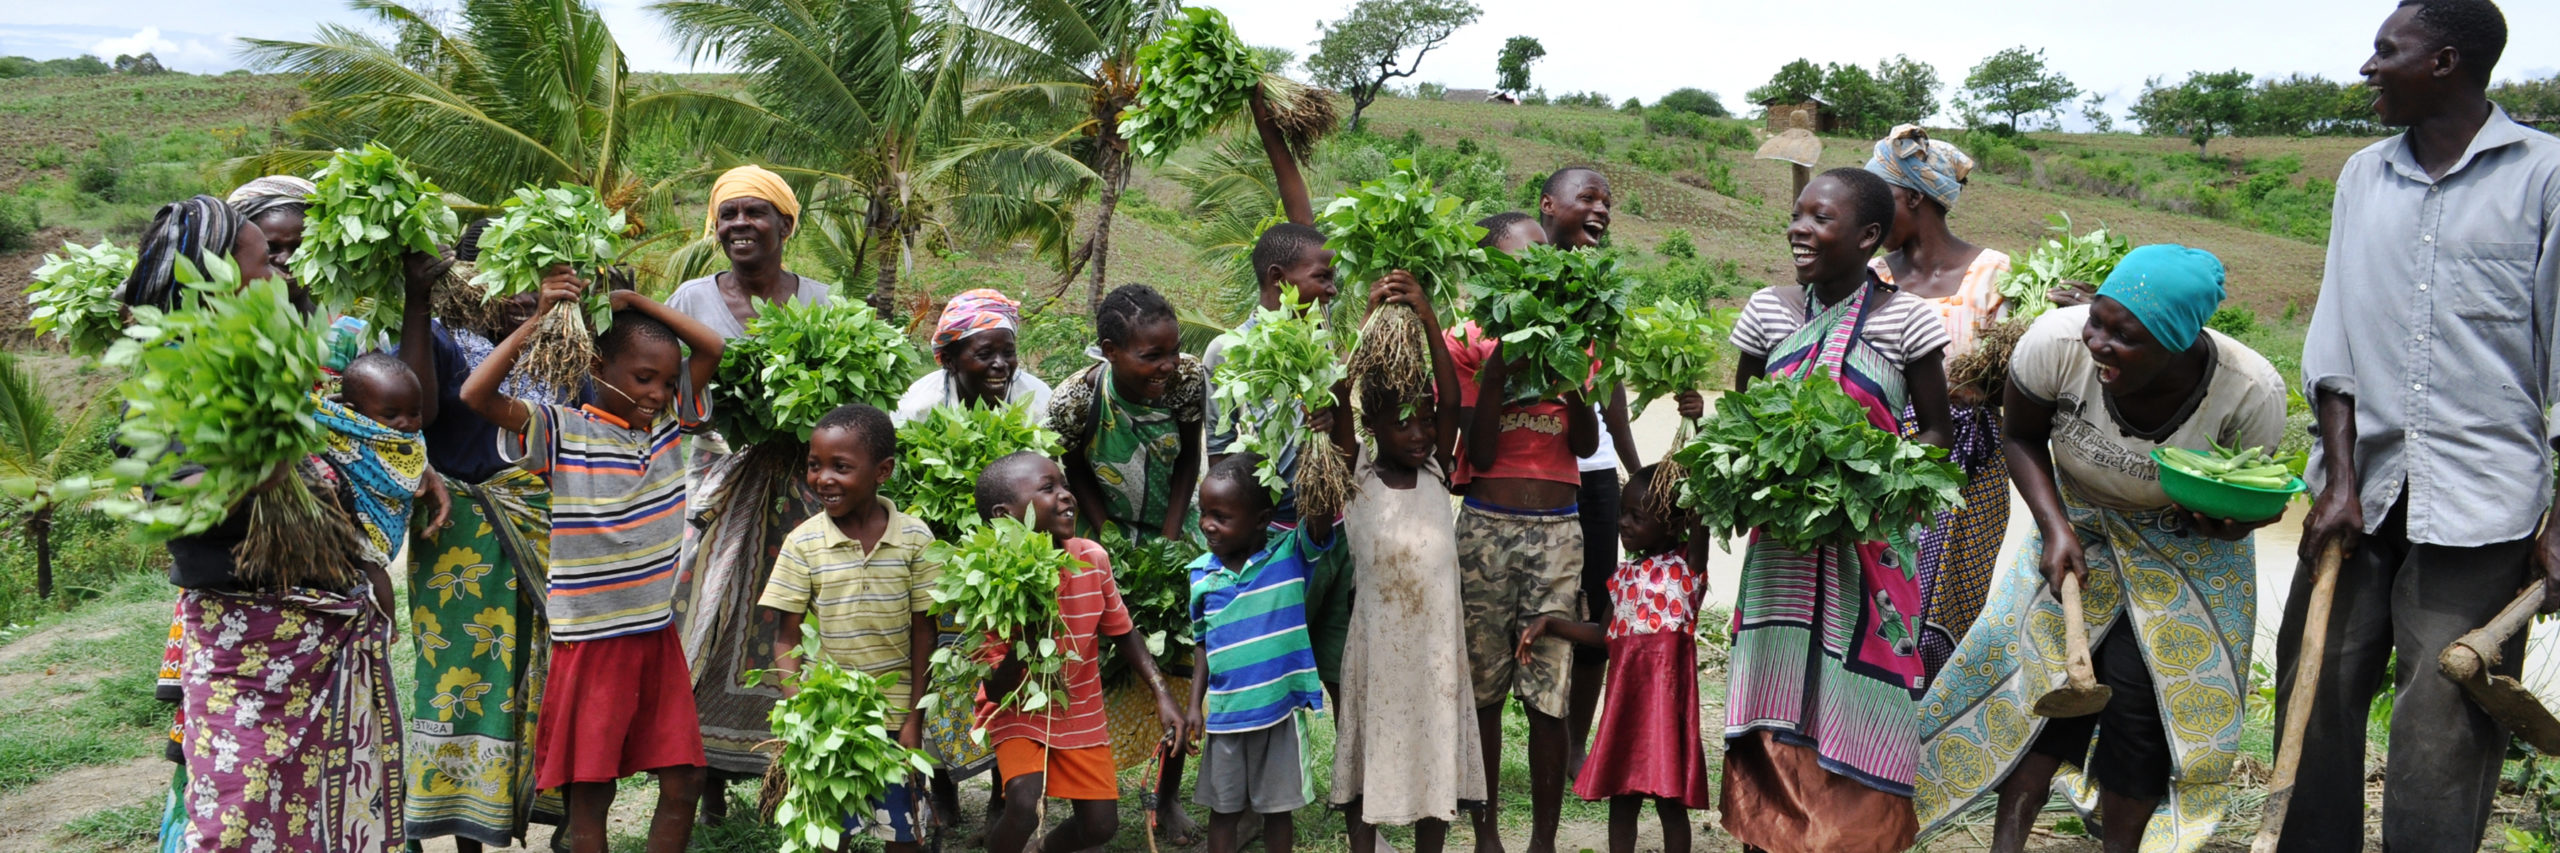 Smallholder Farmers in Zimbabwe